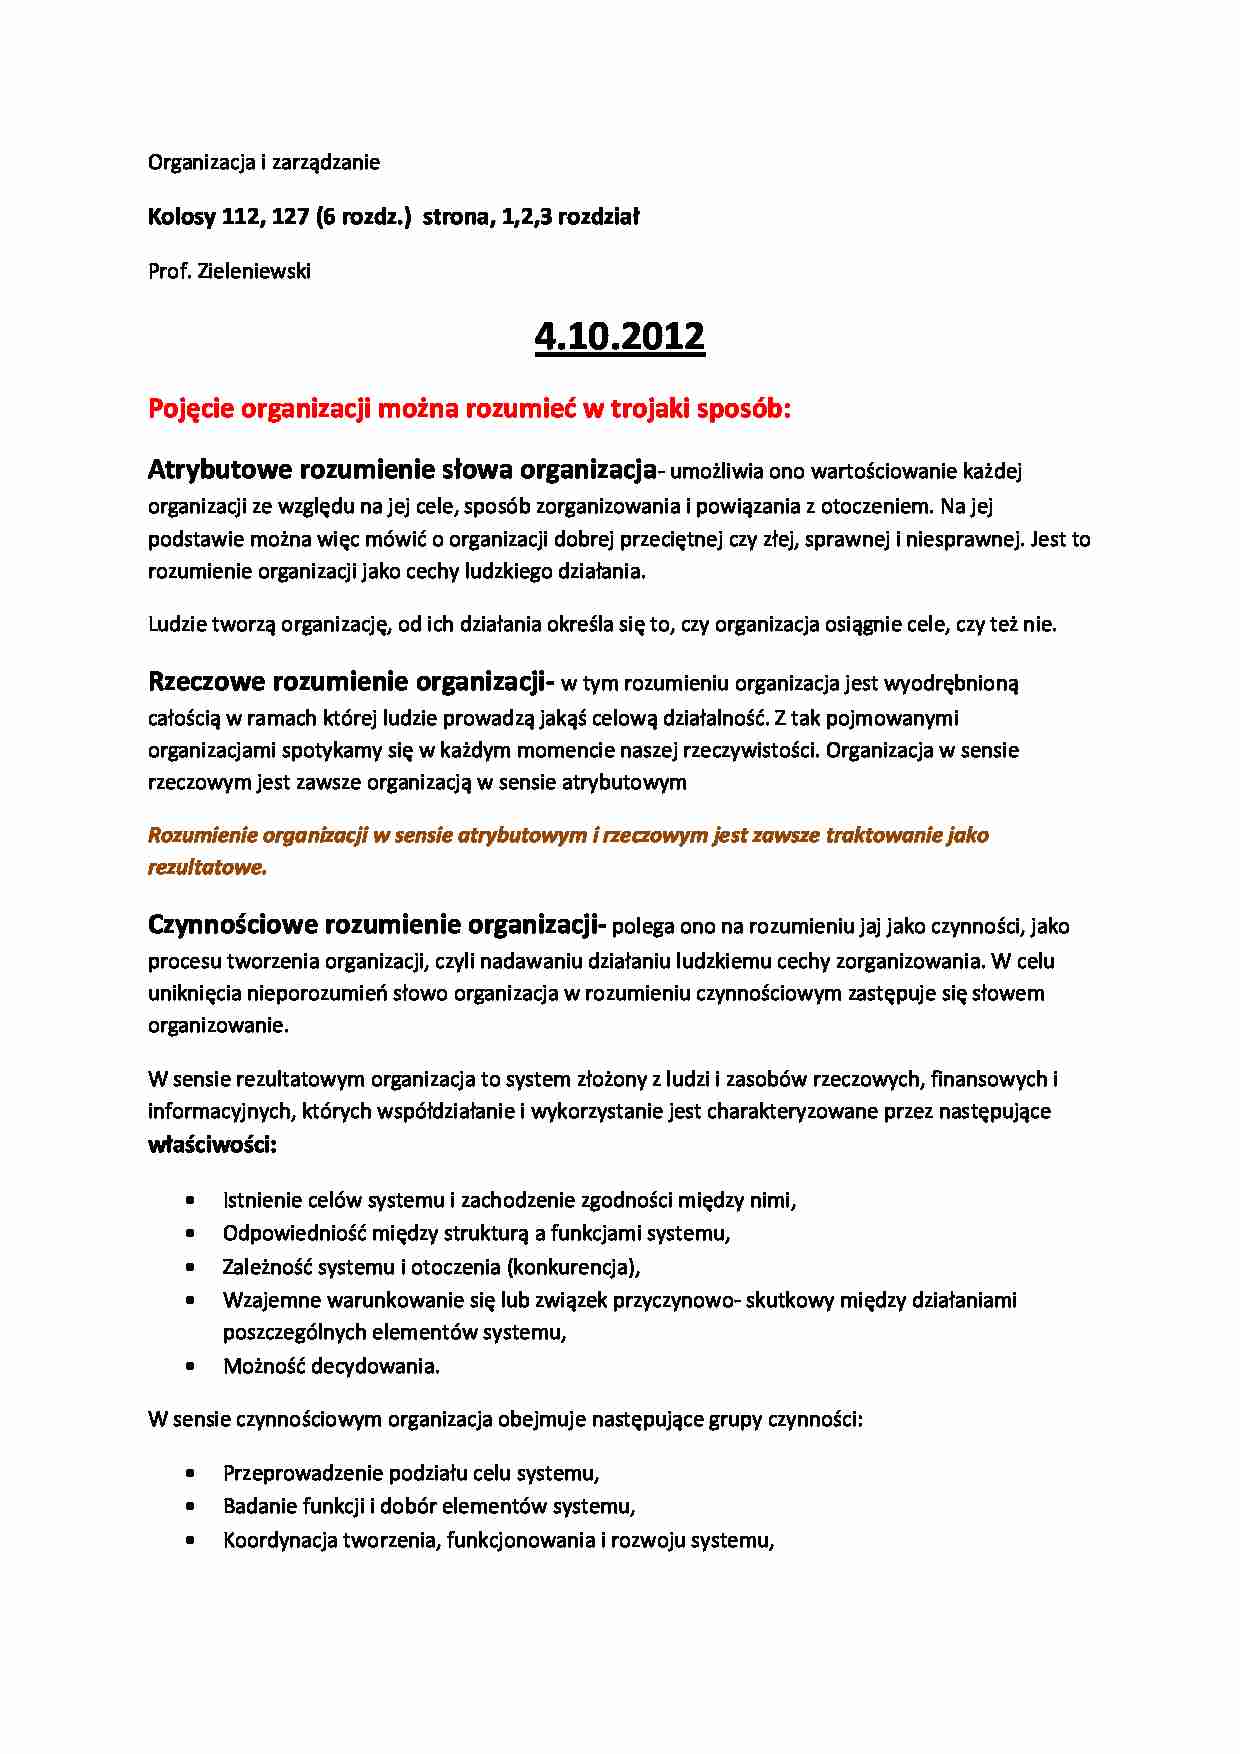 Organizacja i zarządzanie Zieleniewski  - strona 1